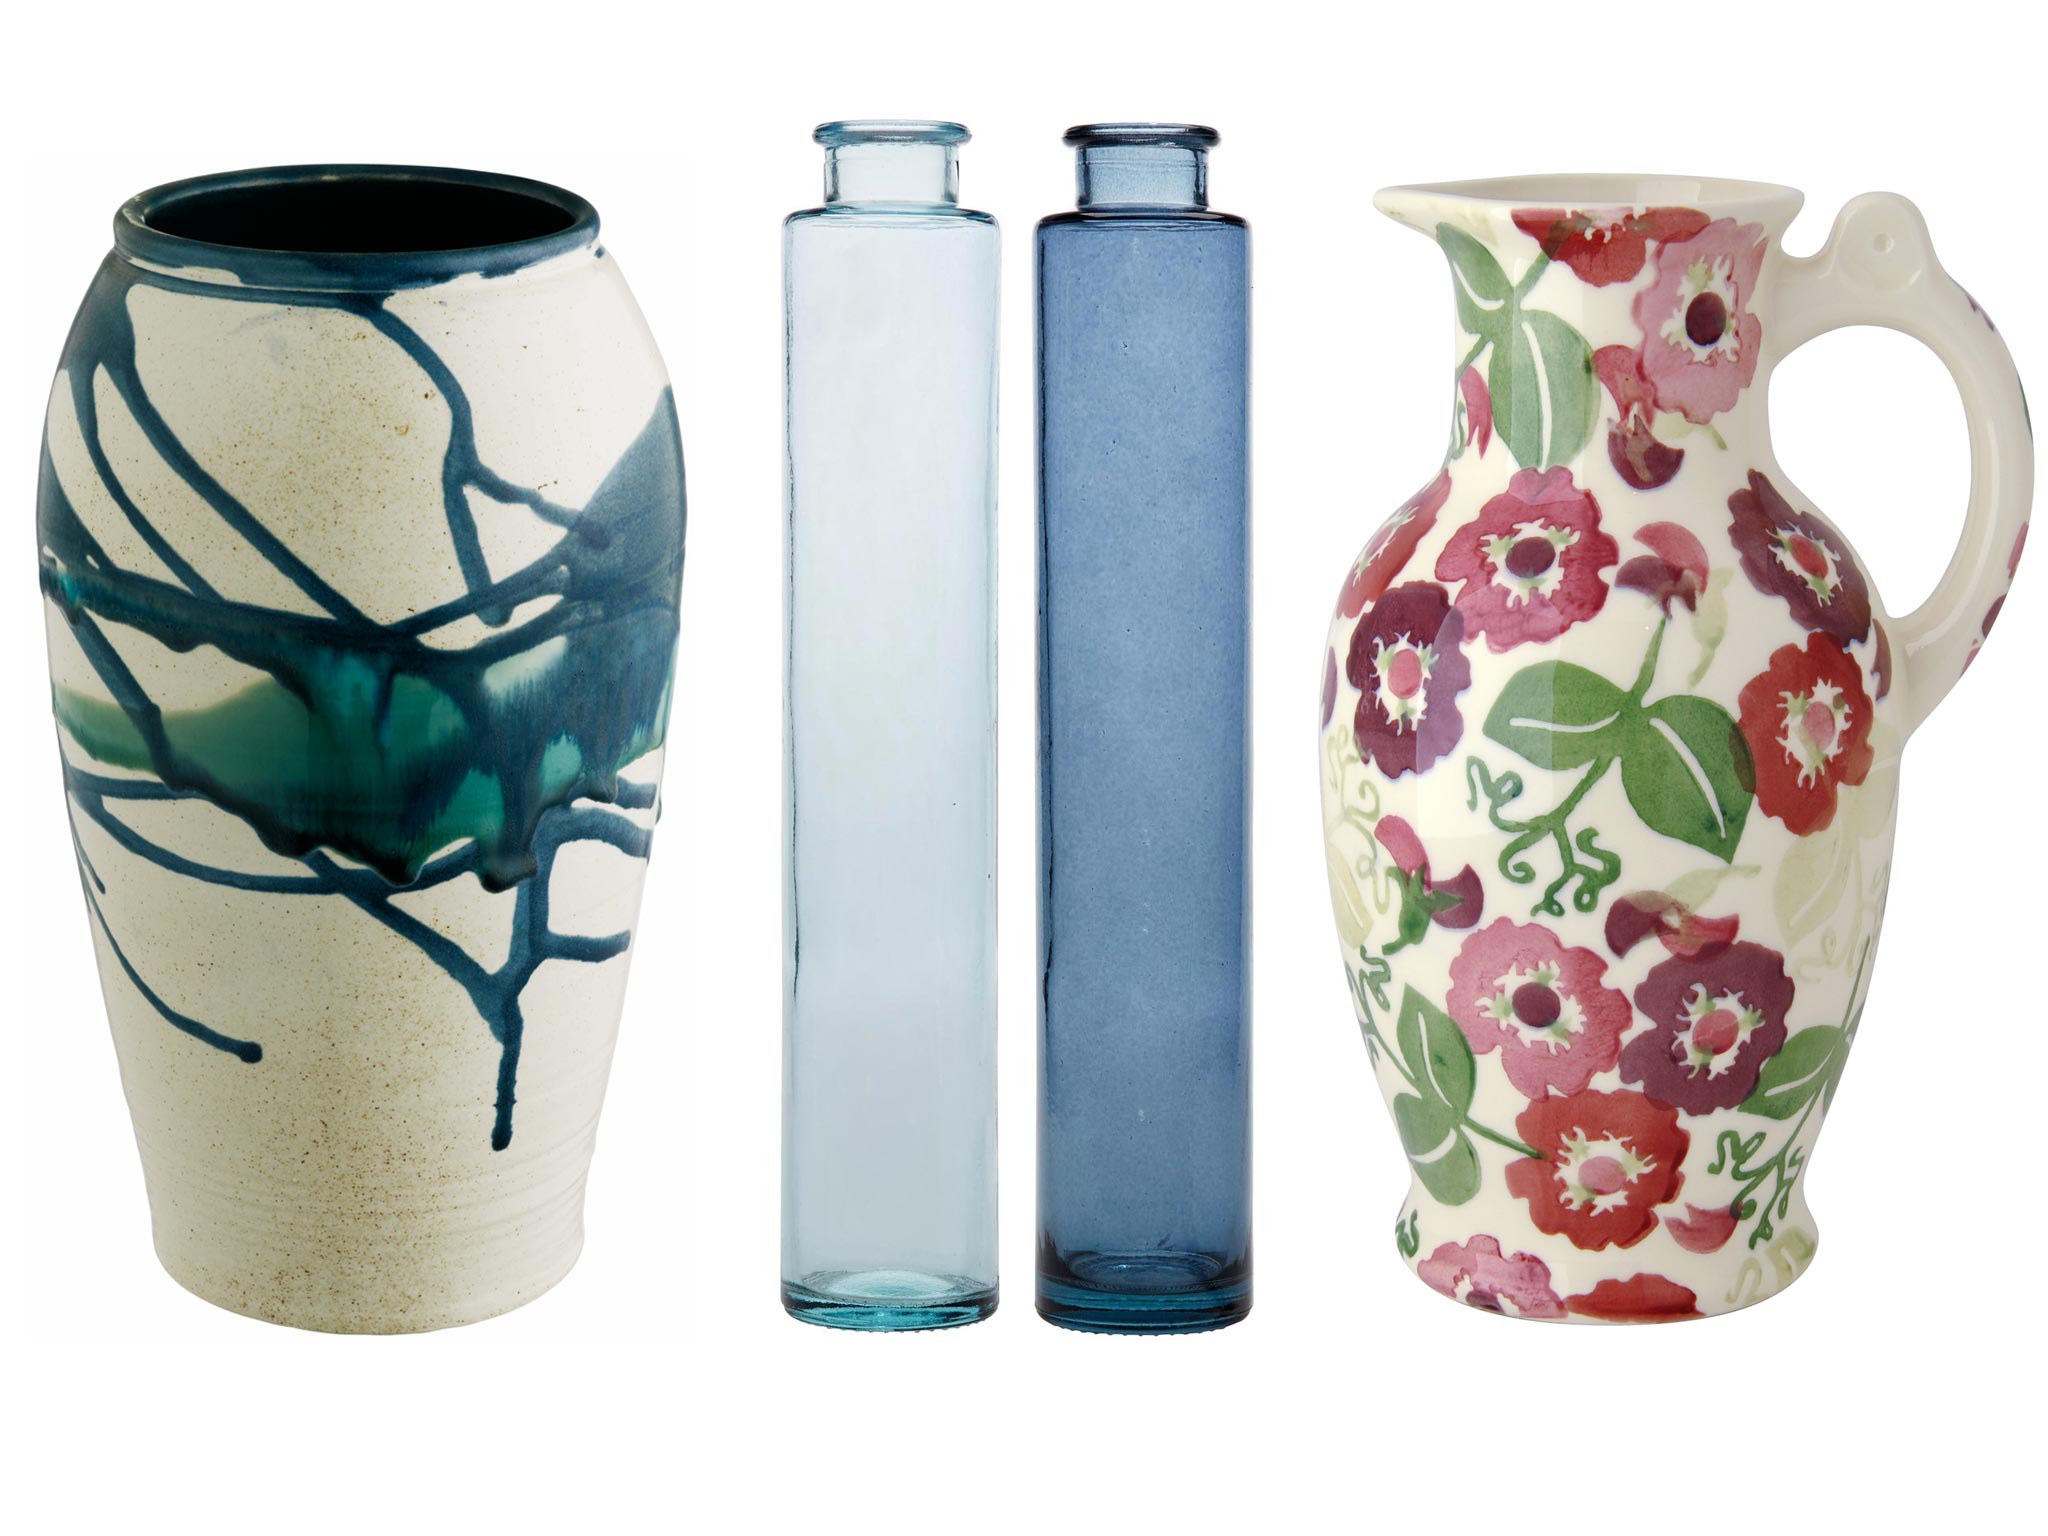 Blooming lovely: 10 best flower vases